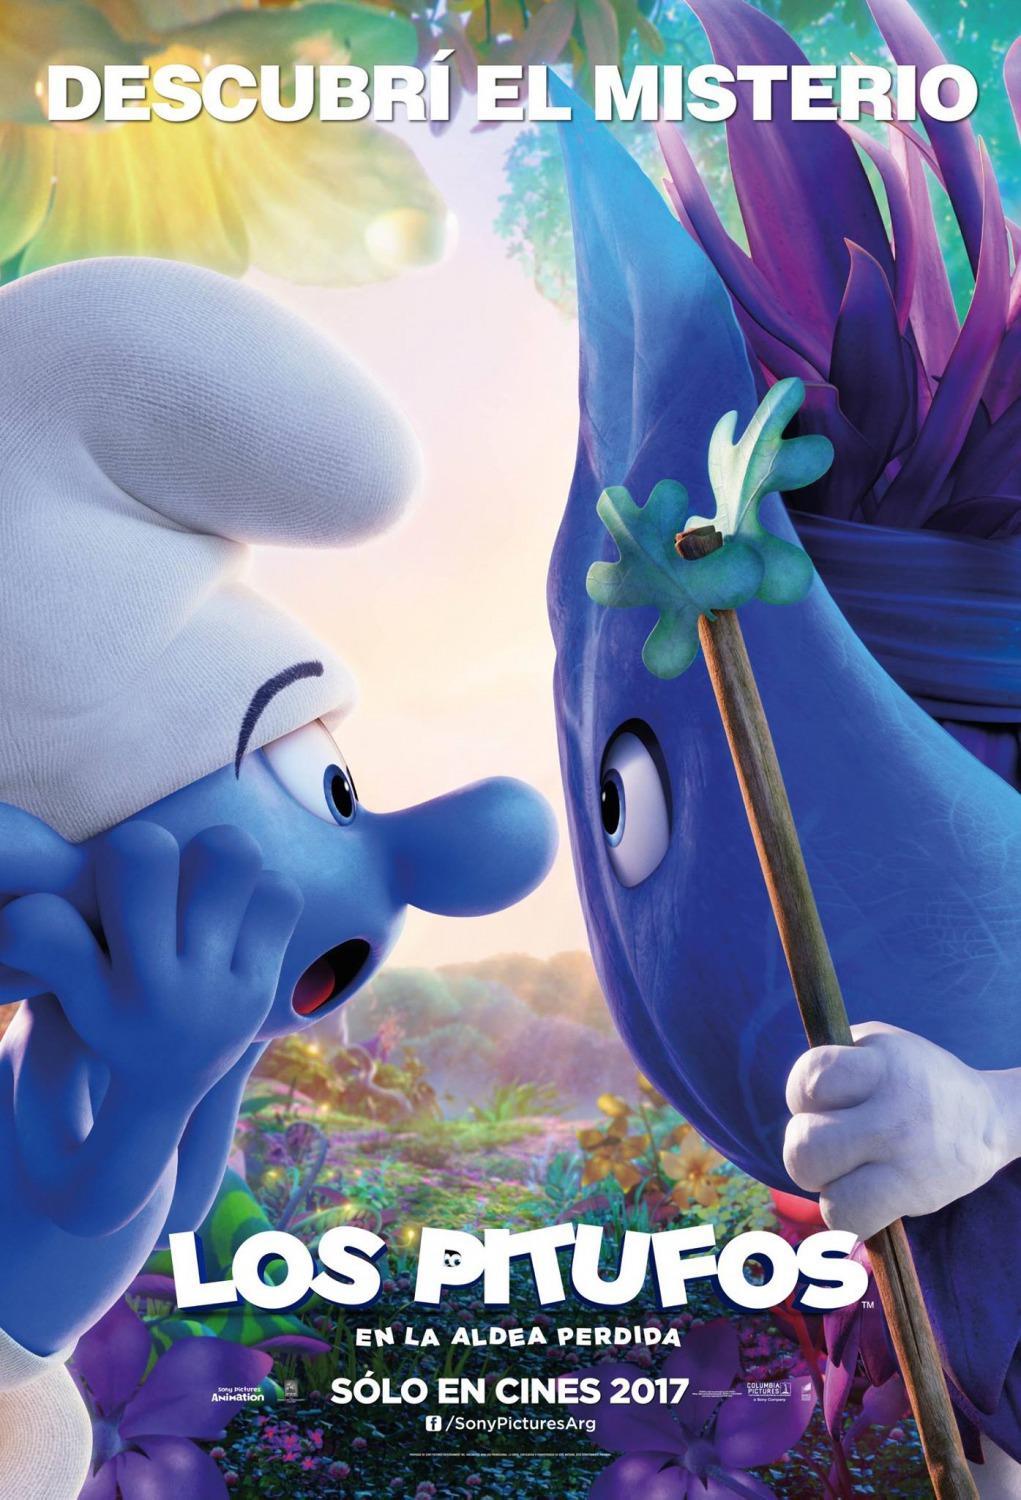 Постер фильма Смурфики: Затерянная деревня | Smurfs: The Lost Village